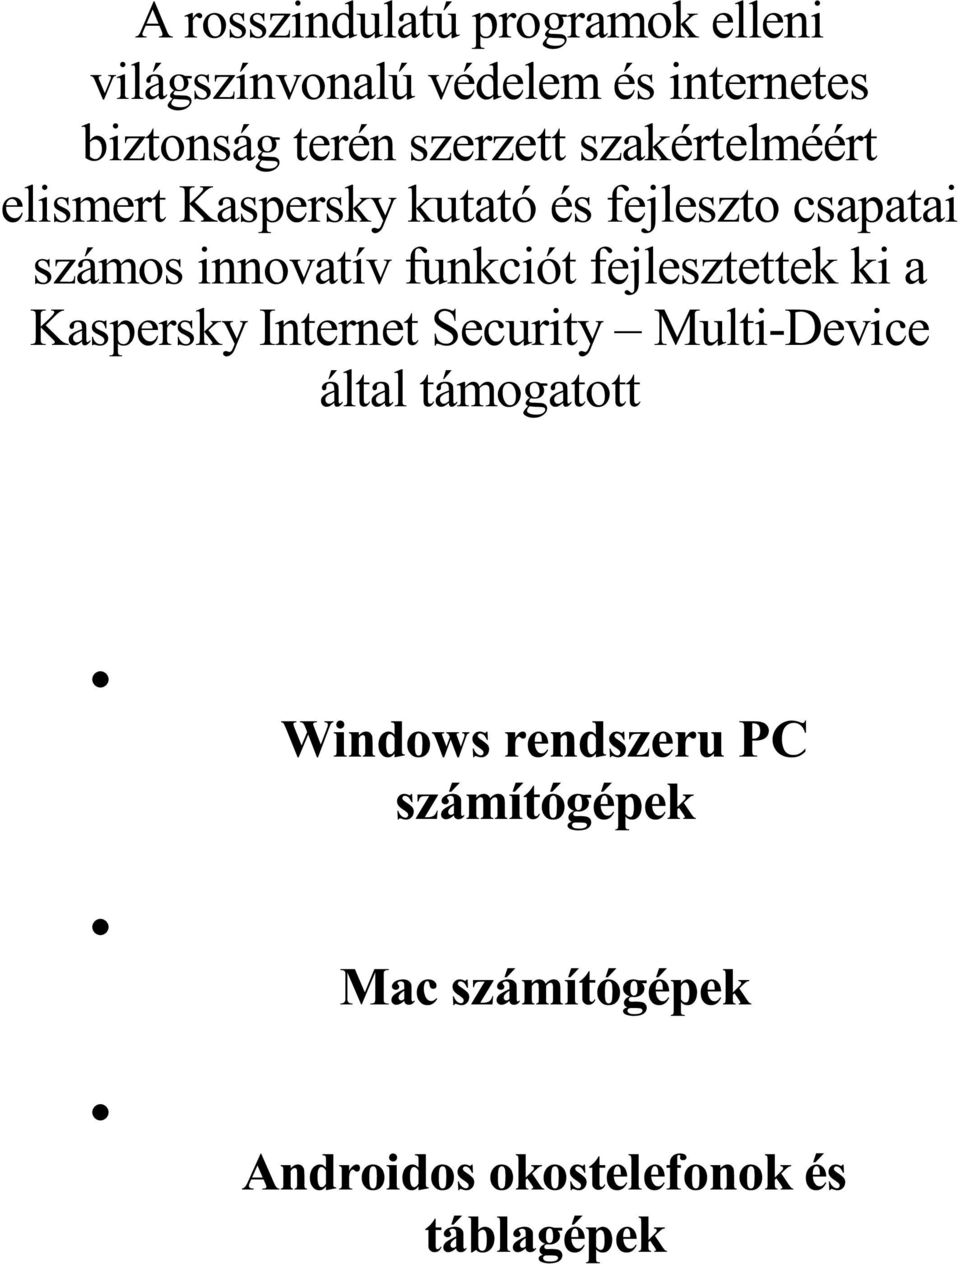 innovatív funkciót fejlesztettek ki a Kaspersky Internet Security Multi-Device által